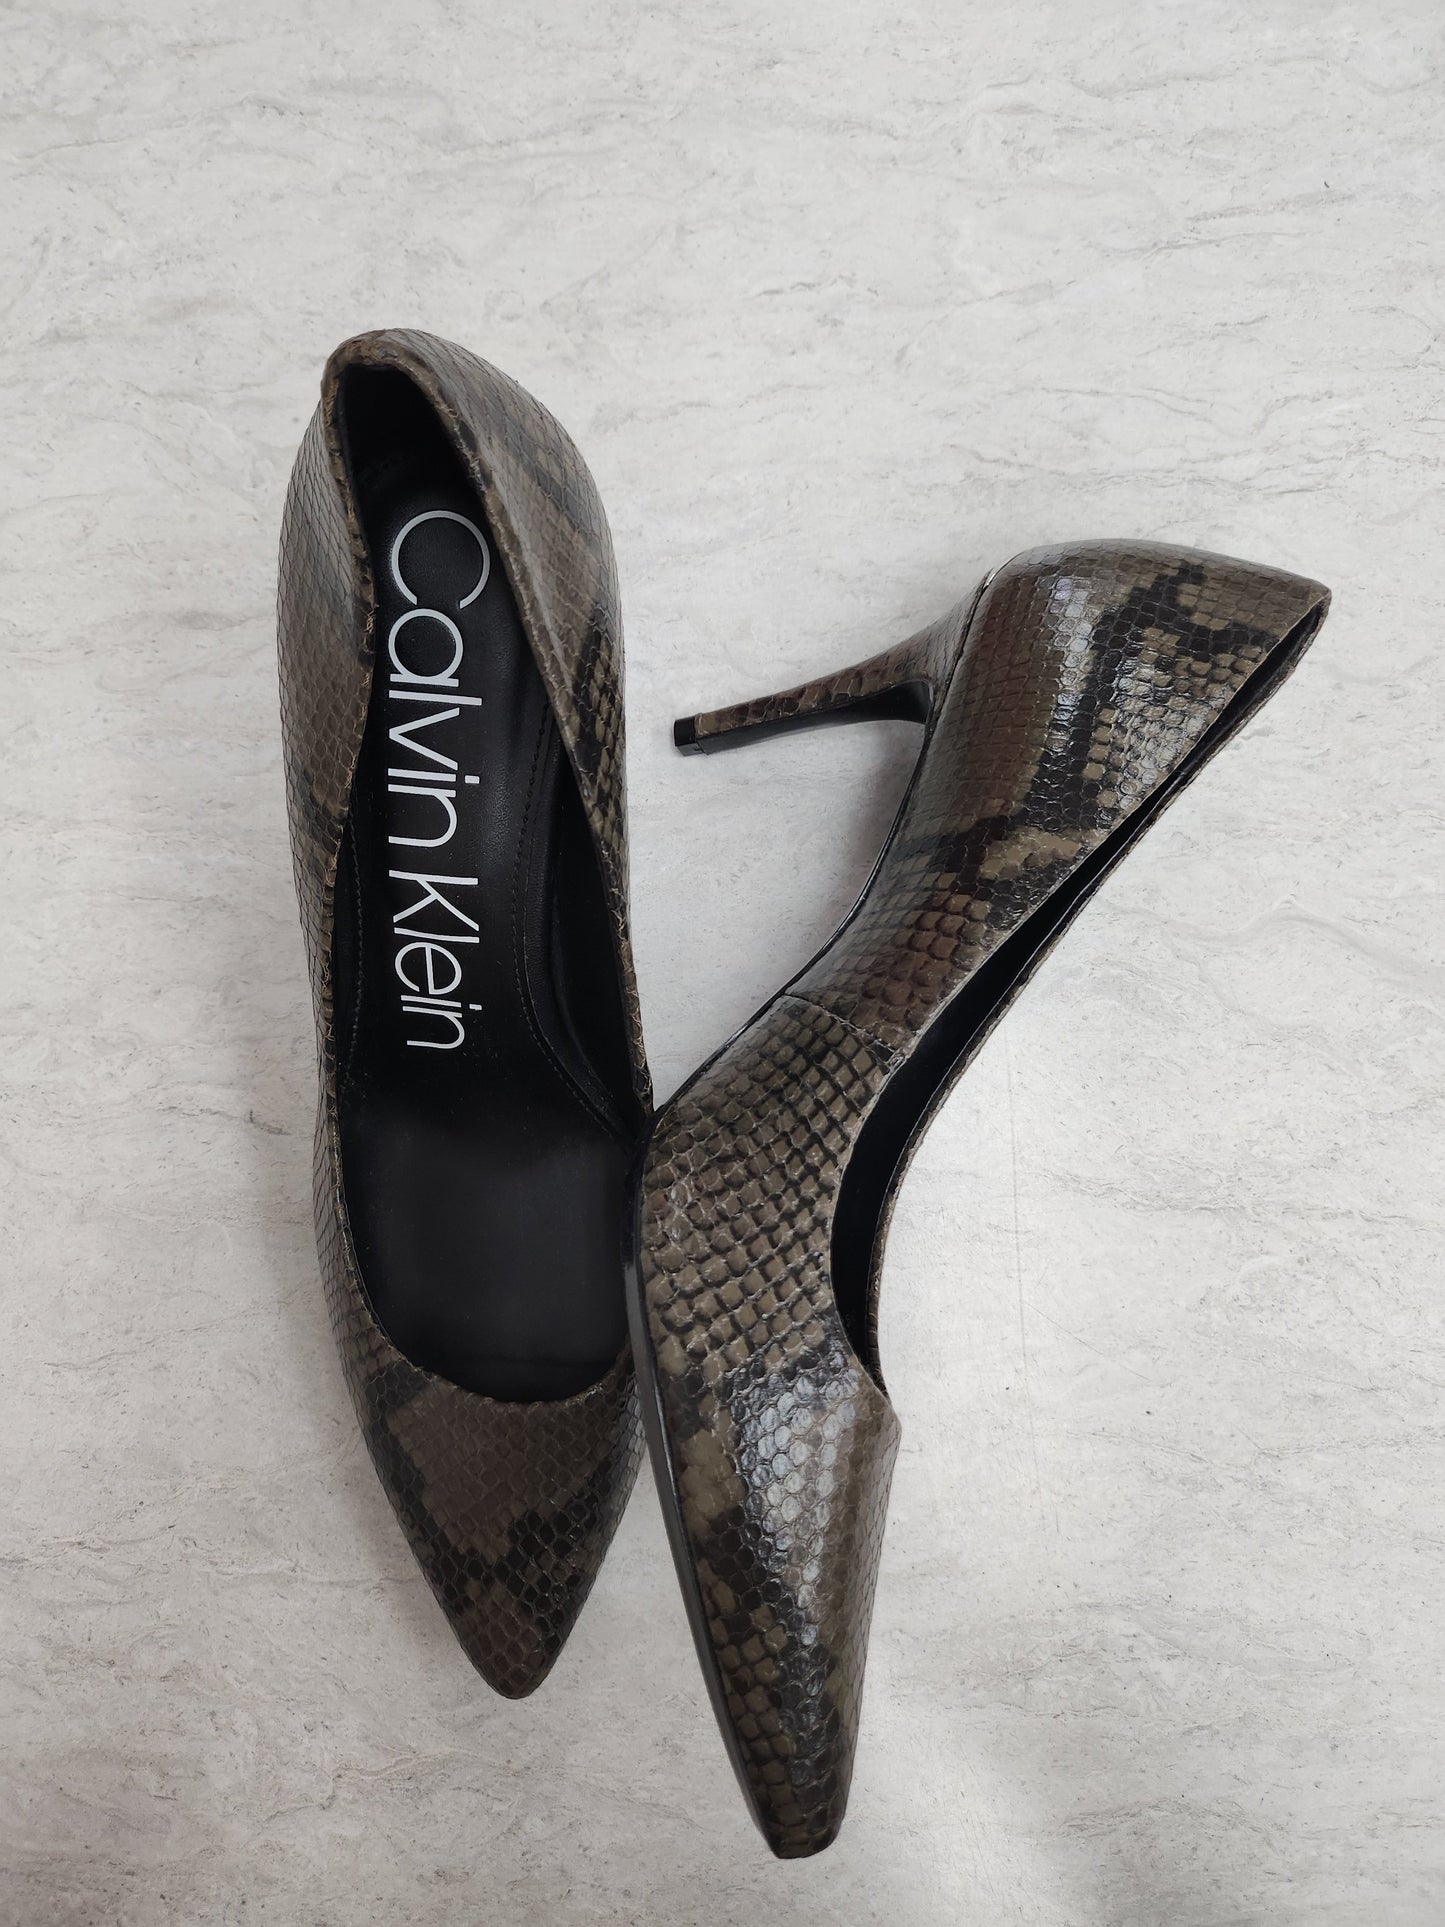 Snakeskin Print Shoes Heels Stiletto Calvin Klein, Size 9.5